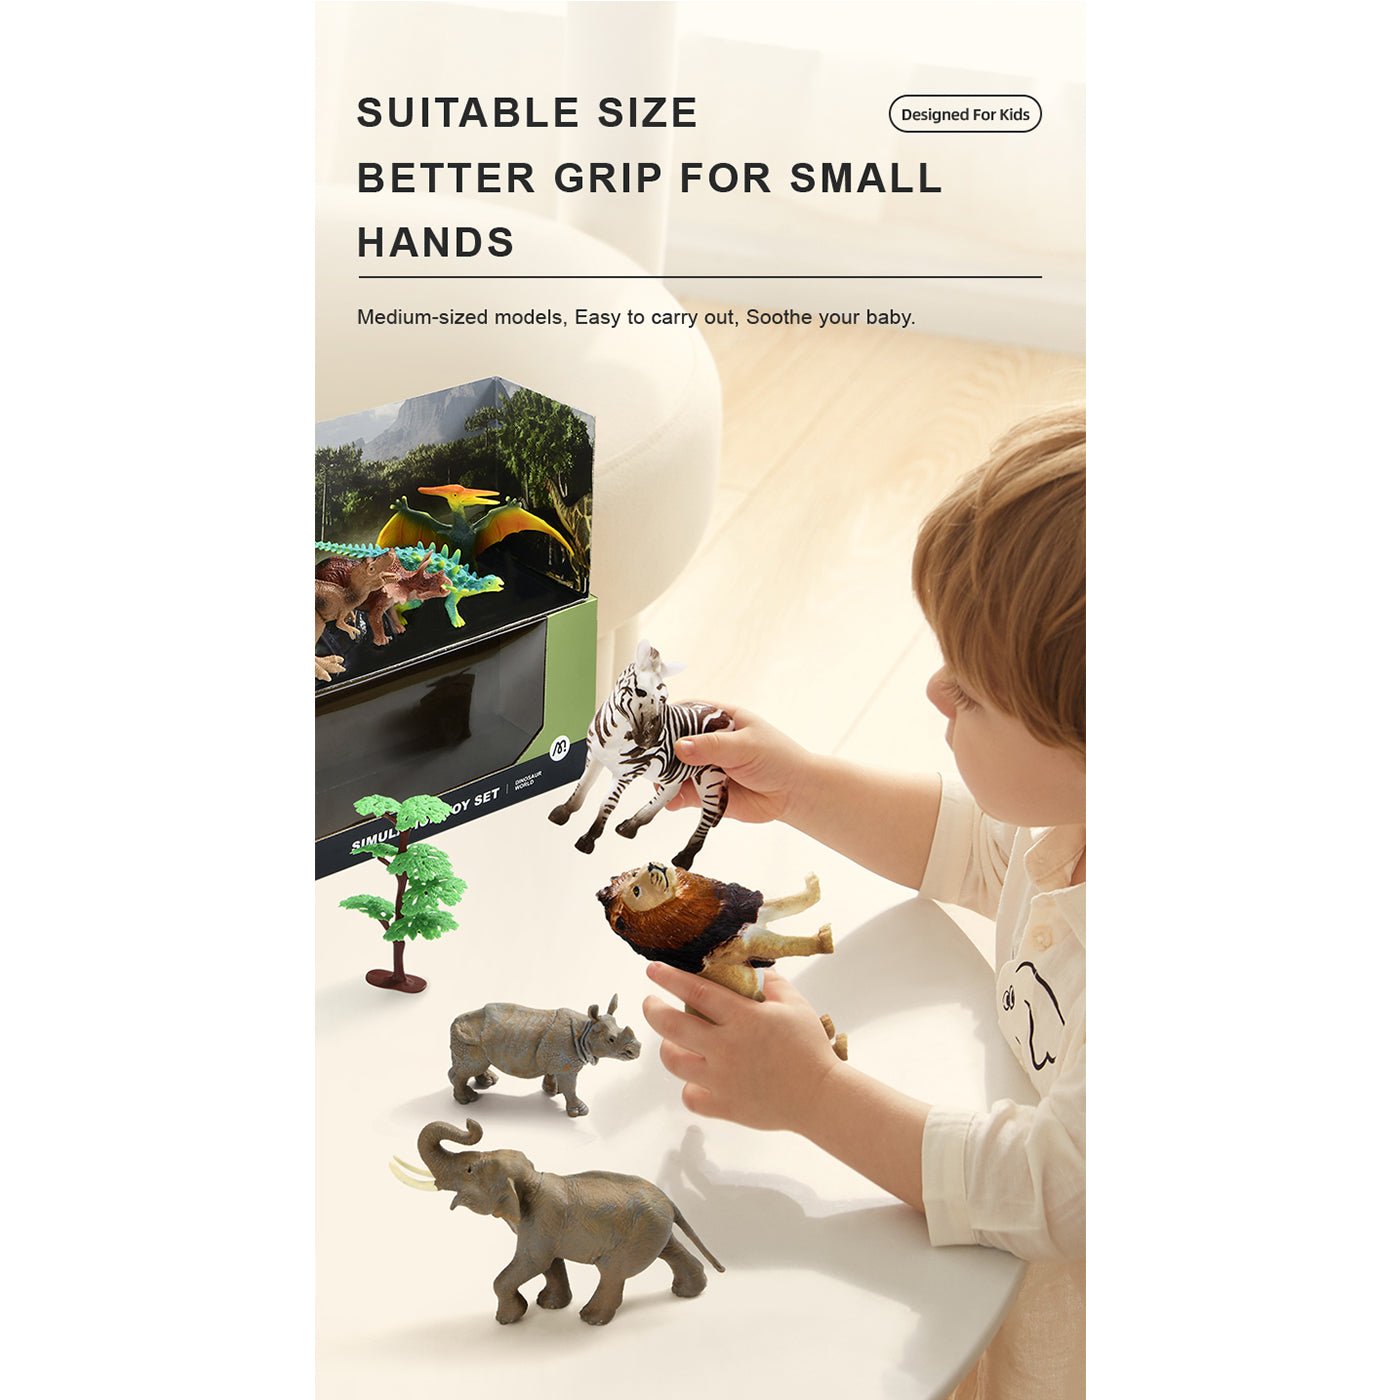 Simulation Toy Set - Animal Paradise - 0cm